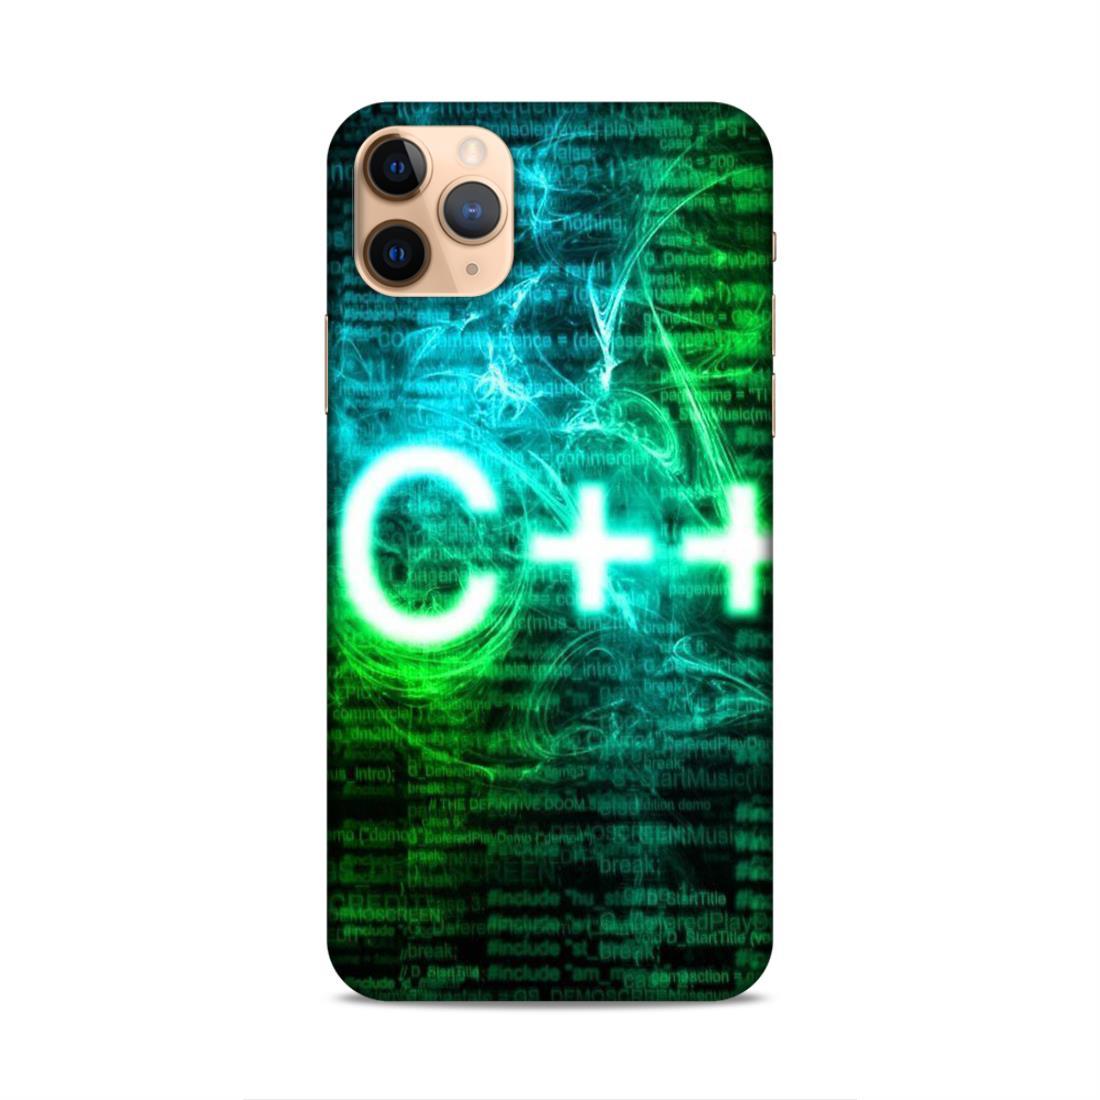 C++ Language iPhone 11 Pro Phone Back Case